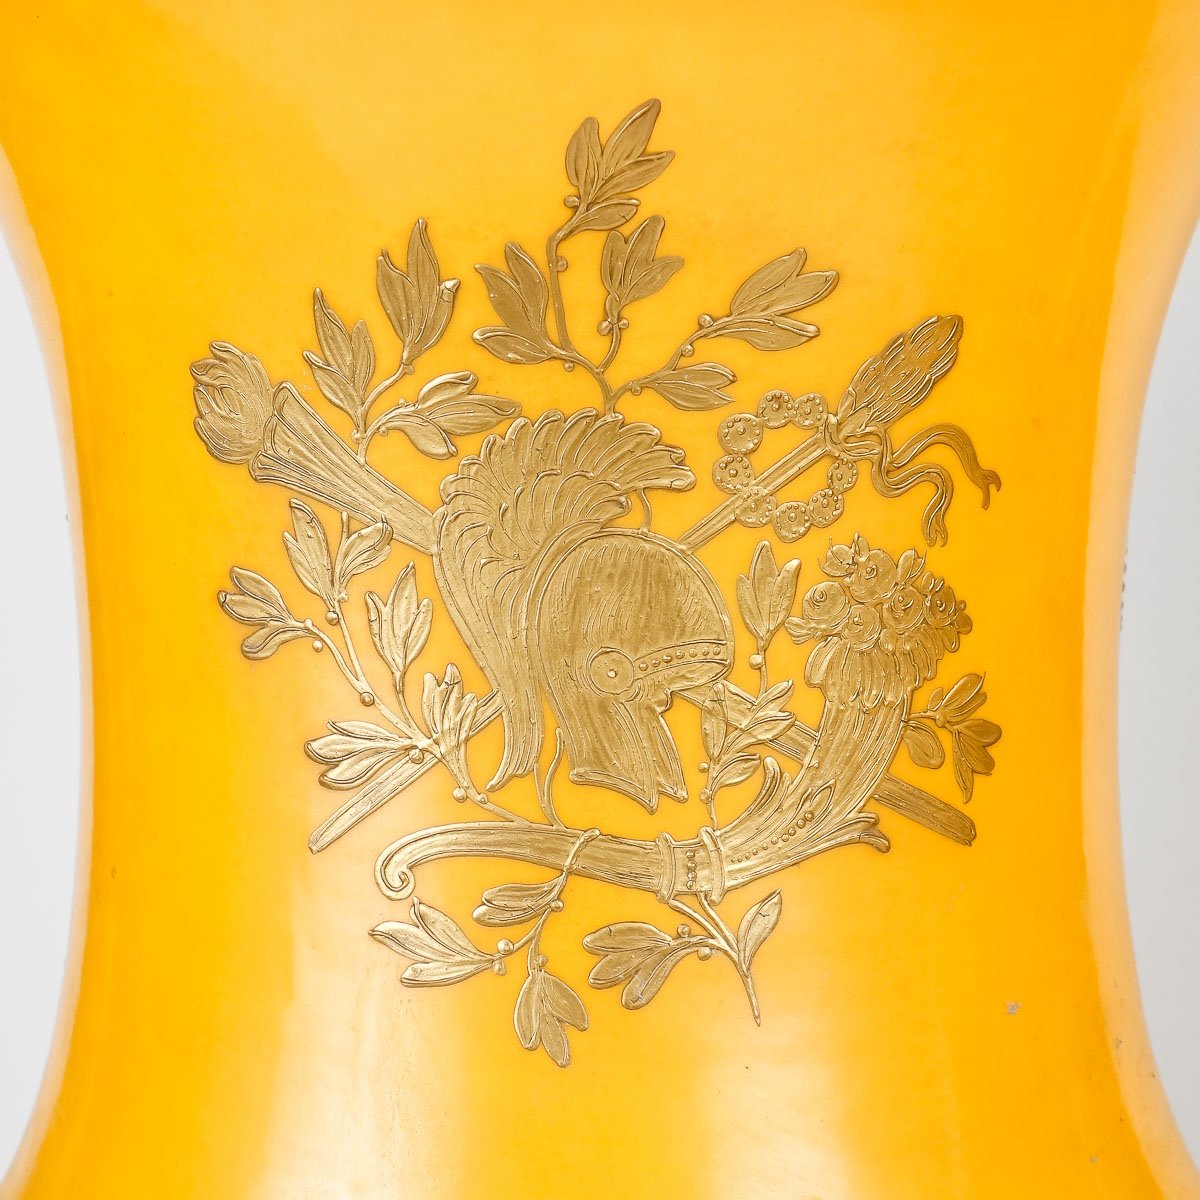 Pair Of Sévres Vases, Porcelain, 19th Century.-photo-3